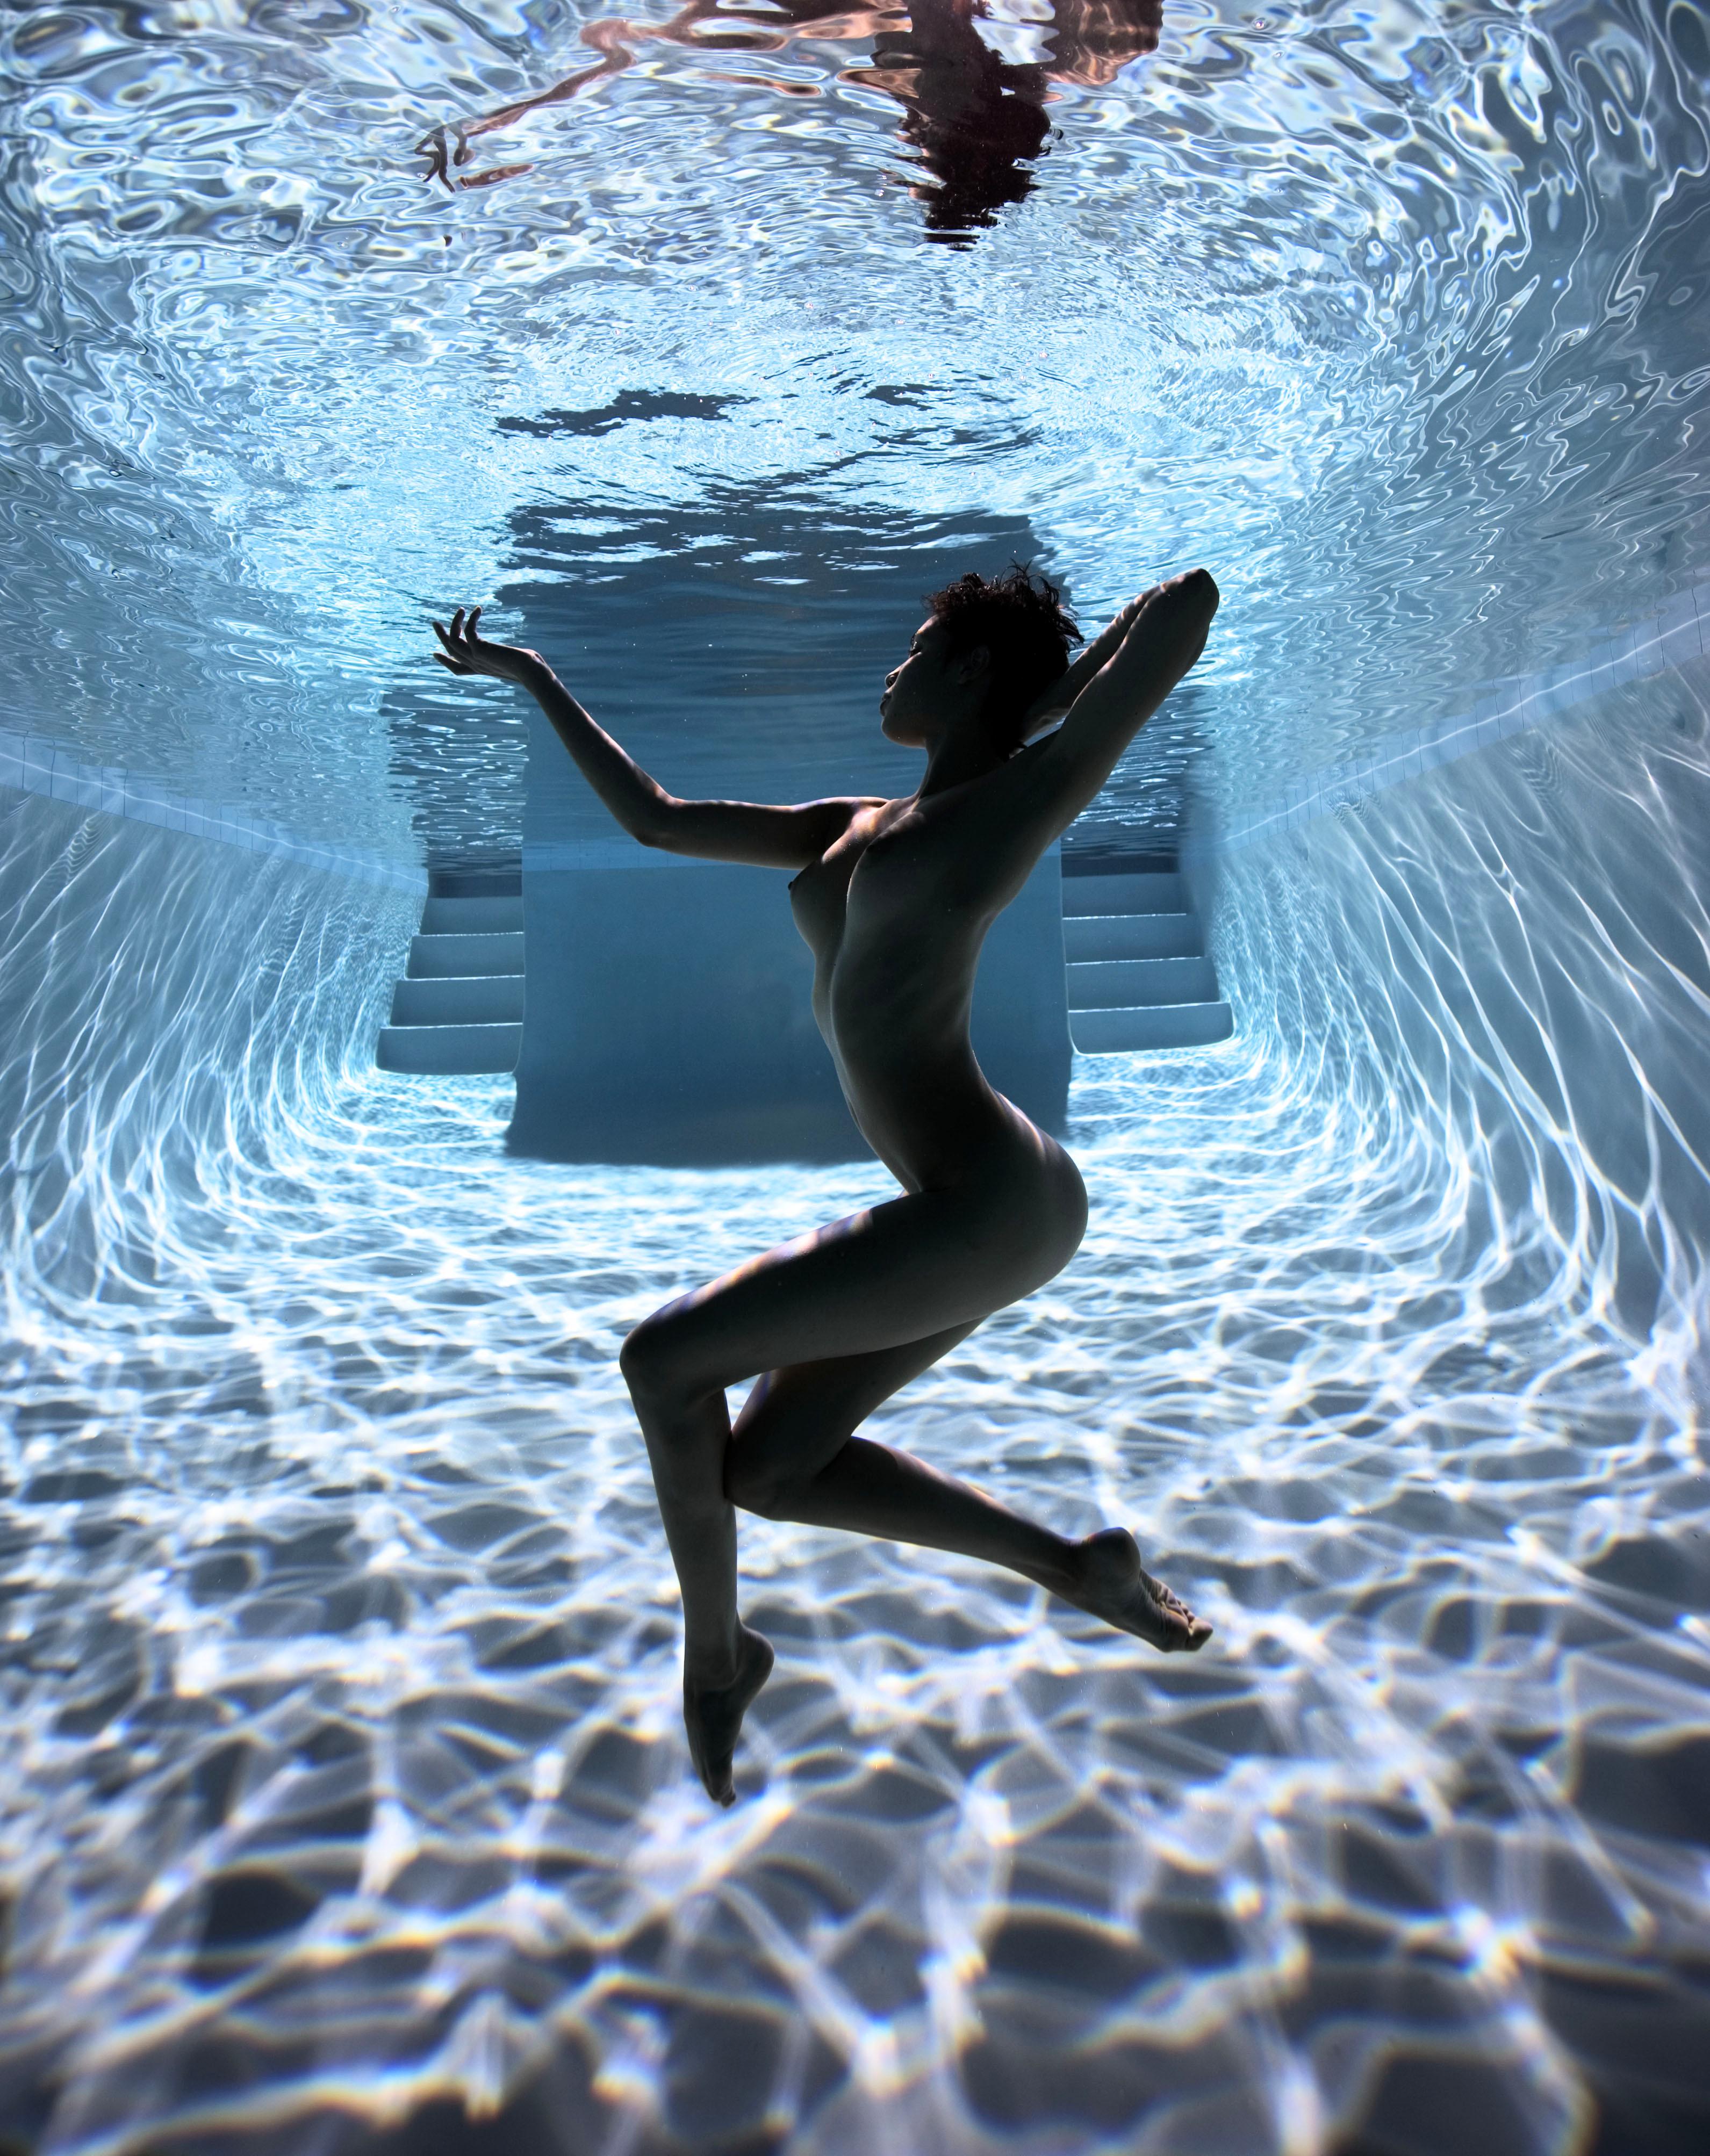 Howard Schatz Color Photograph - Underwater Study 2826